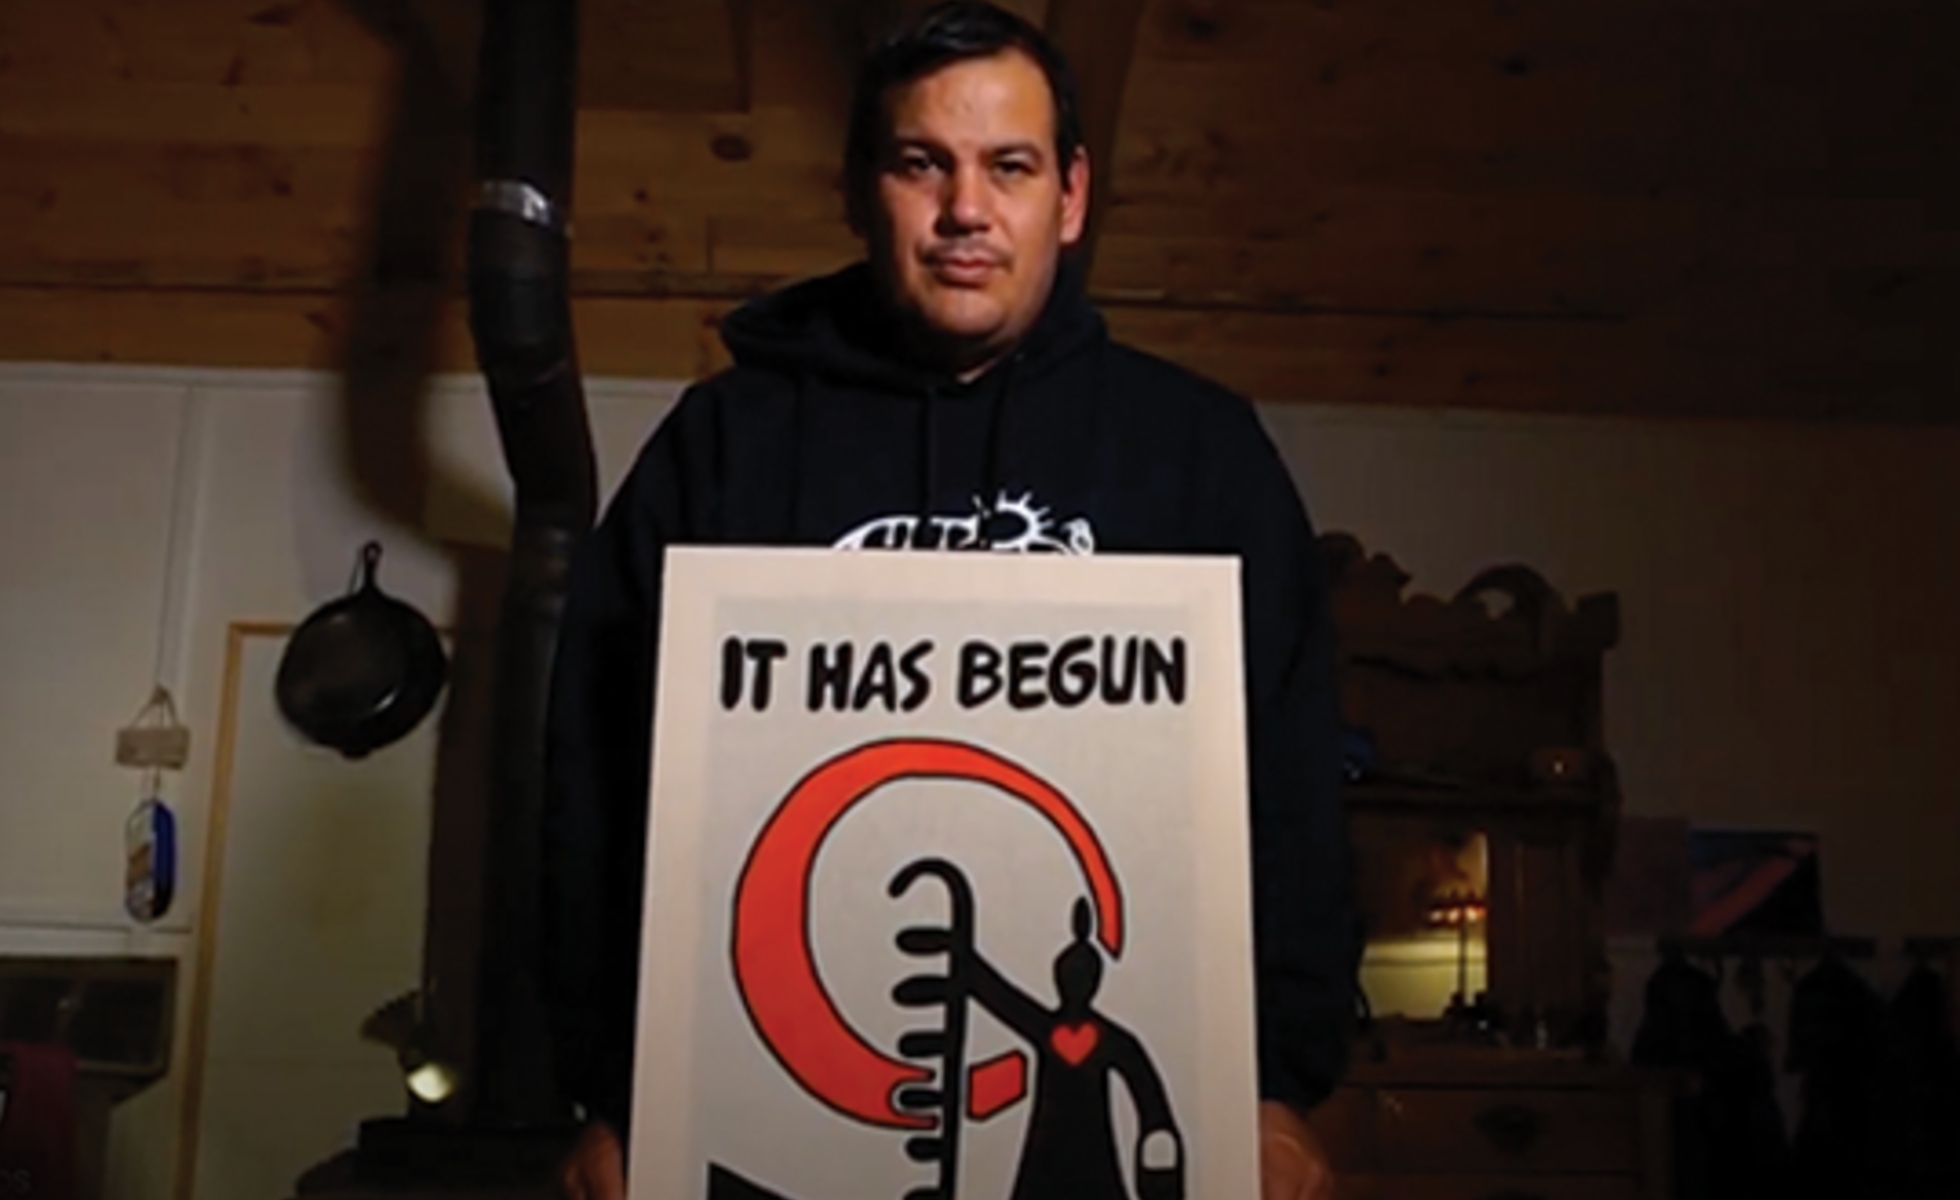 Issac Murdoch holding "It has begun" artwork.